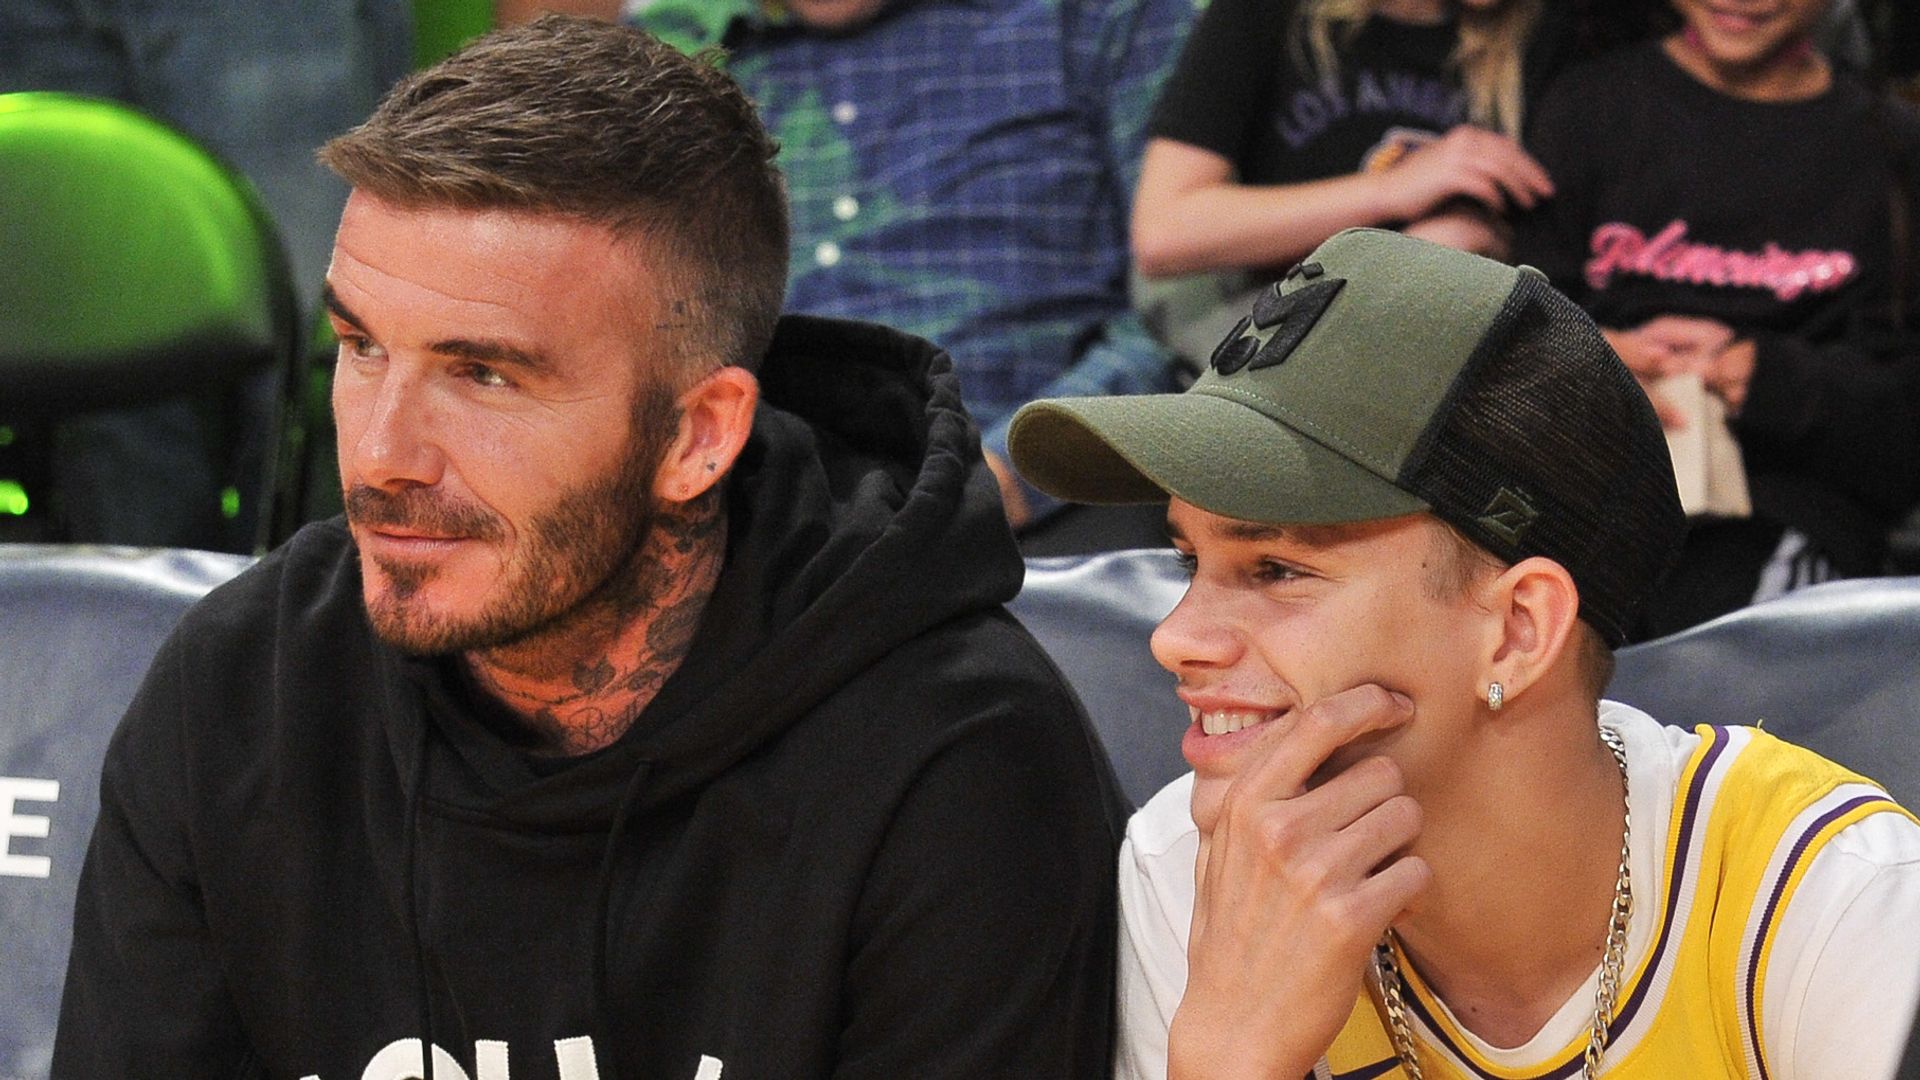 David Beckham and his son Romeo Beckham at basketball game